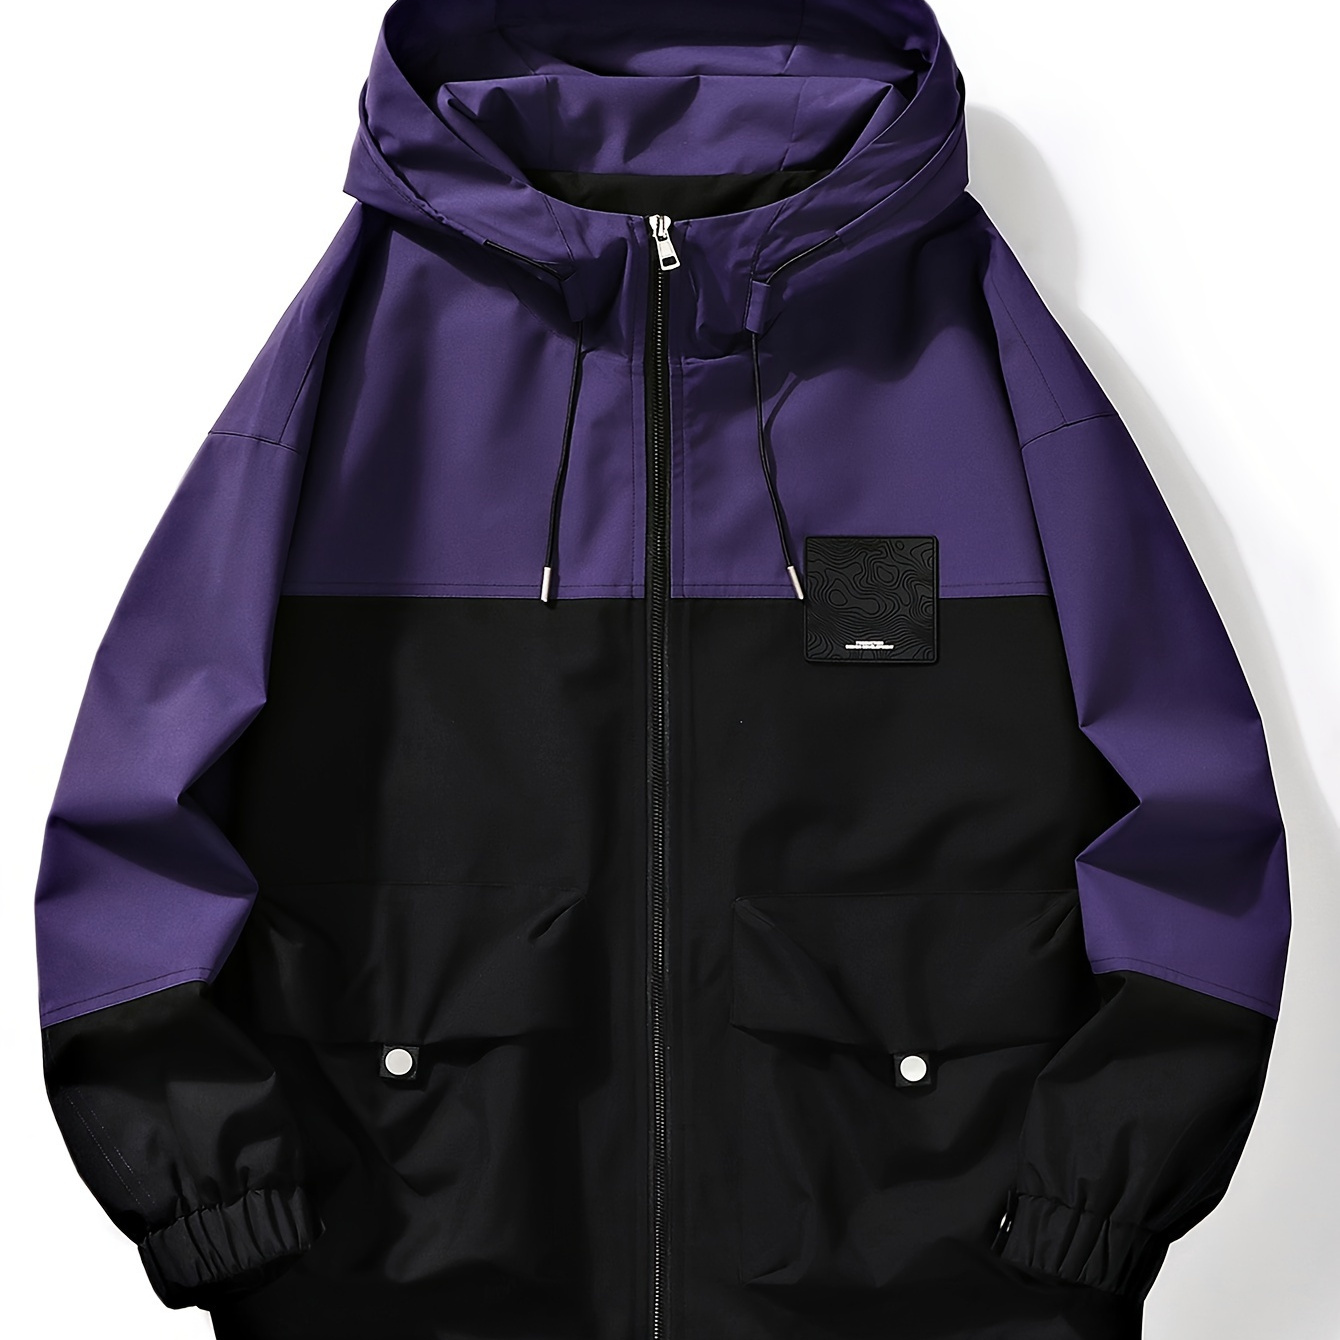 

Men's Casual Color Block Hooded Jacket, Chic Flap Pocket Windbreaker Jacket For Outdoor Activities